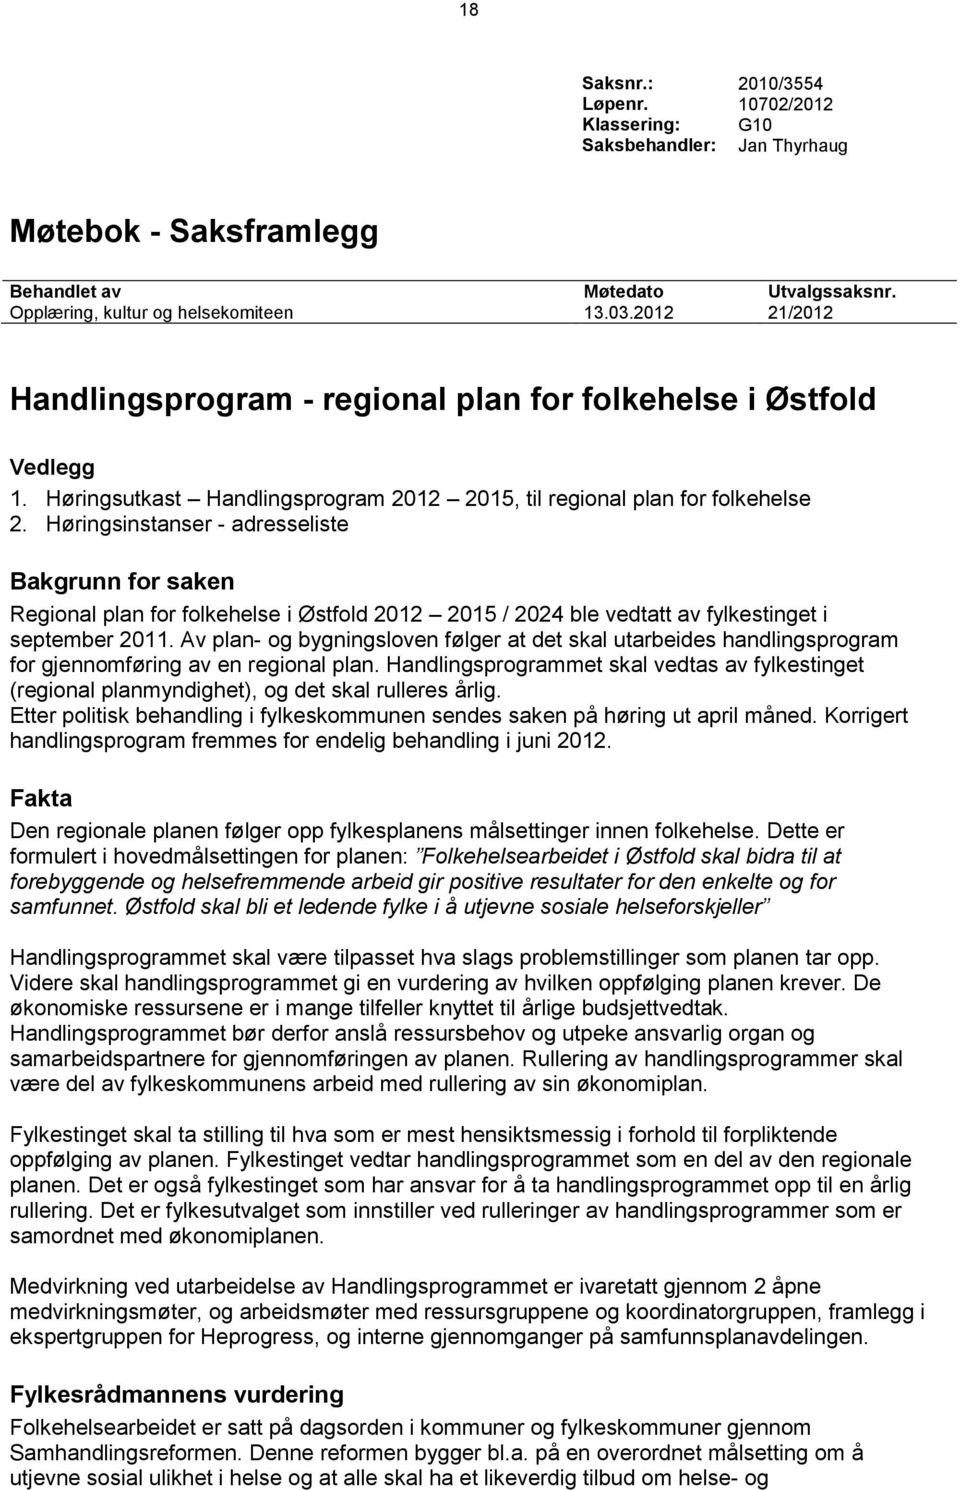 Høringsinstanser - adresseliste Bakgrunn for saken Regional plan for folkehelse i Østfold 2012 2015 / 2024 ble vedtatt av fylkestinget i september 2011.